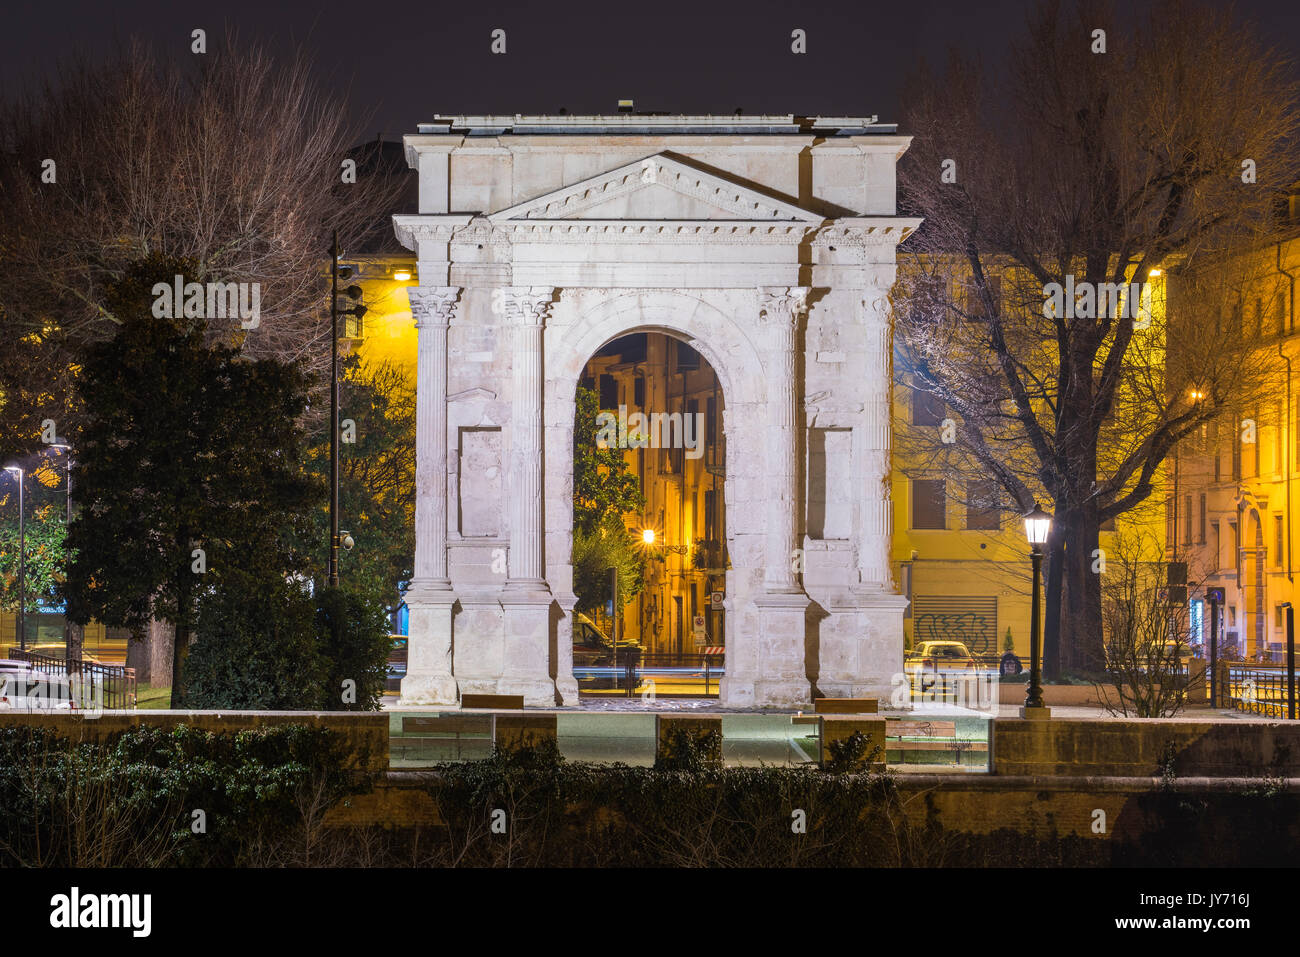 Vérone, Italie, Europe. L'Arco dei Gavi par nuit Banque D'Images